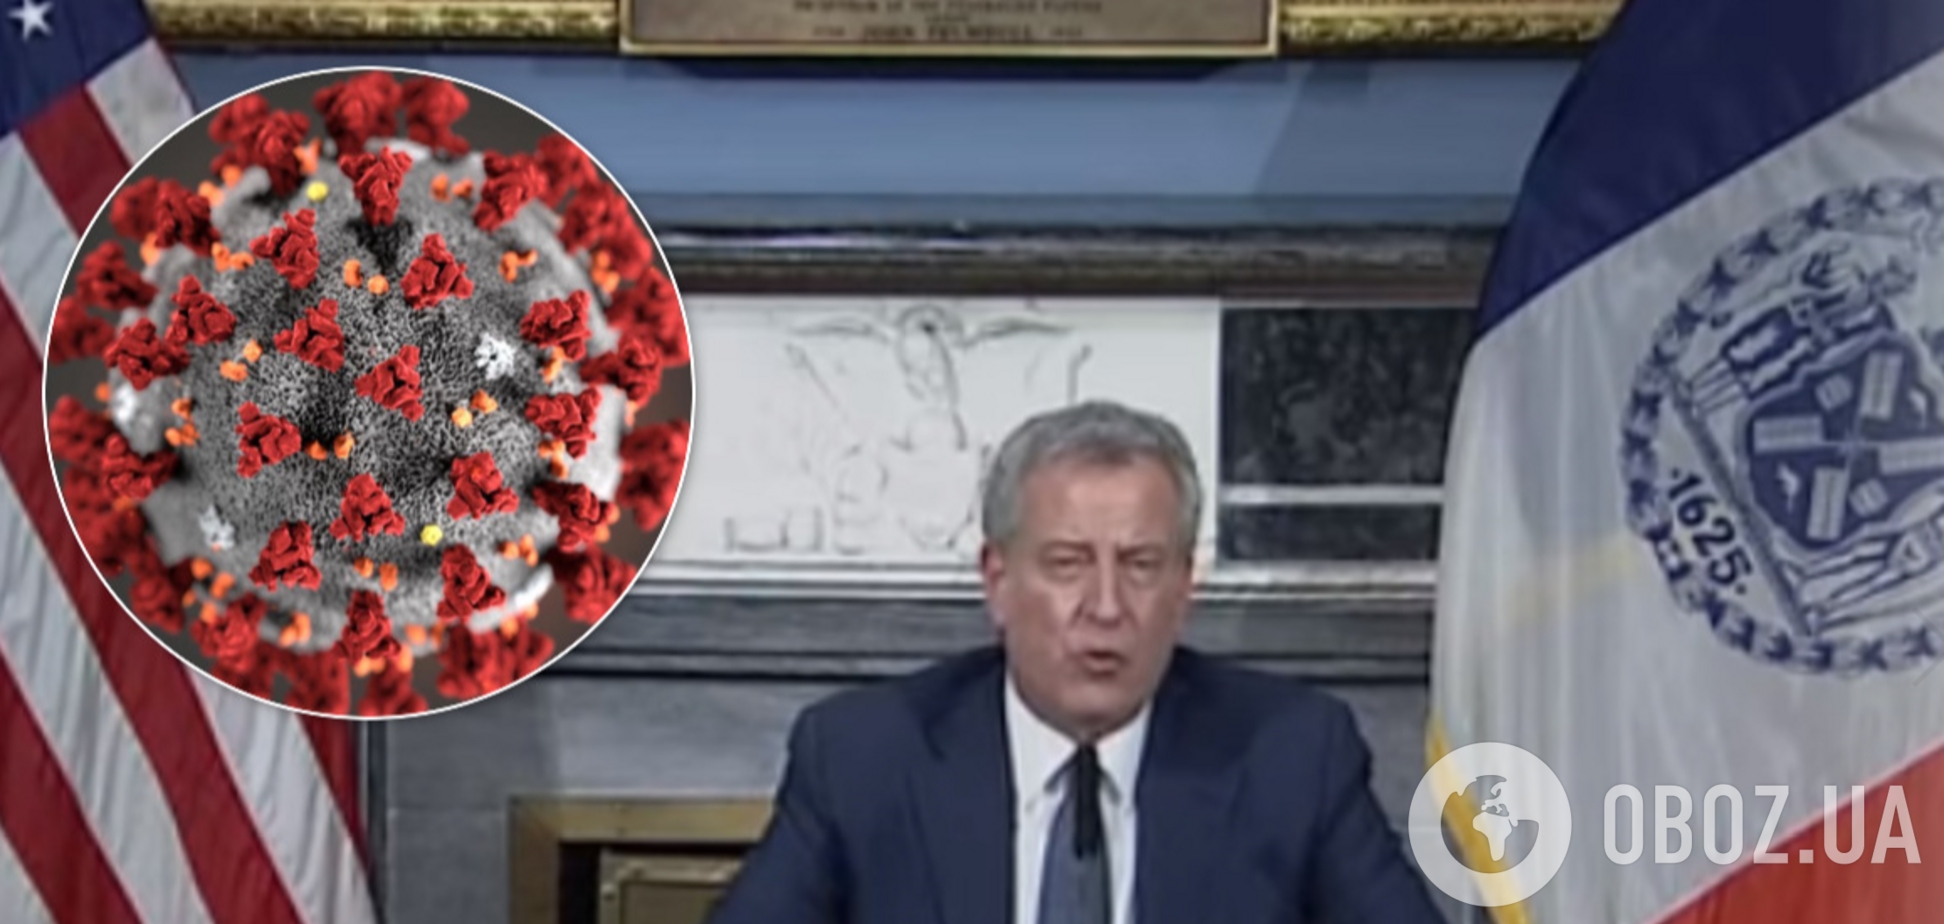 Мэр Нью-Йорка признался в катастрофе из-за коронавируса